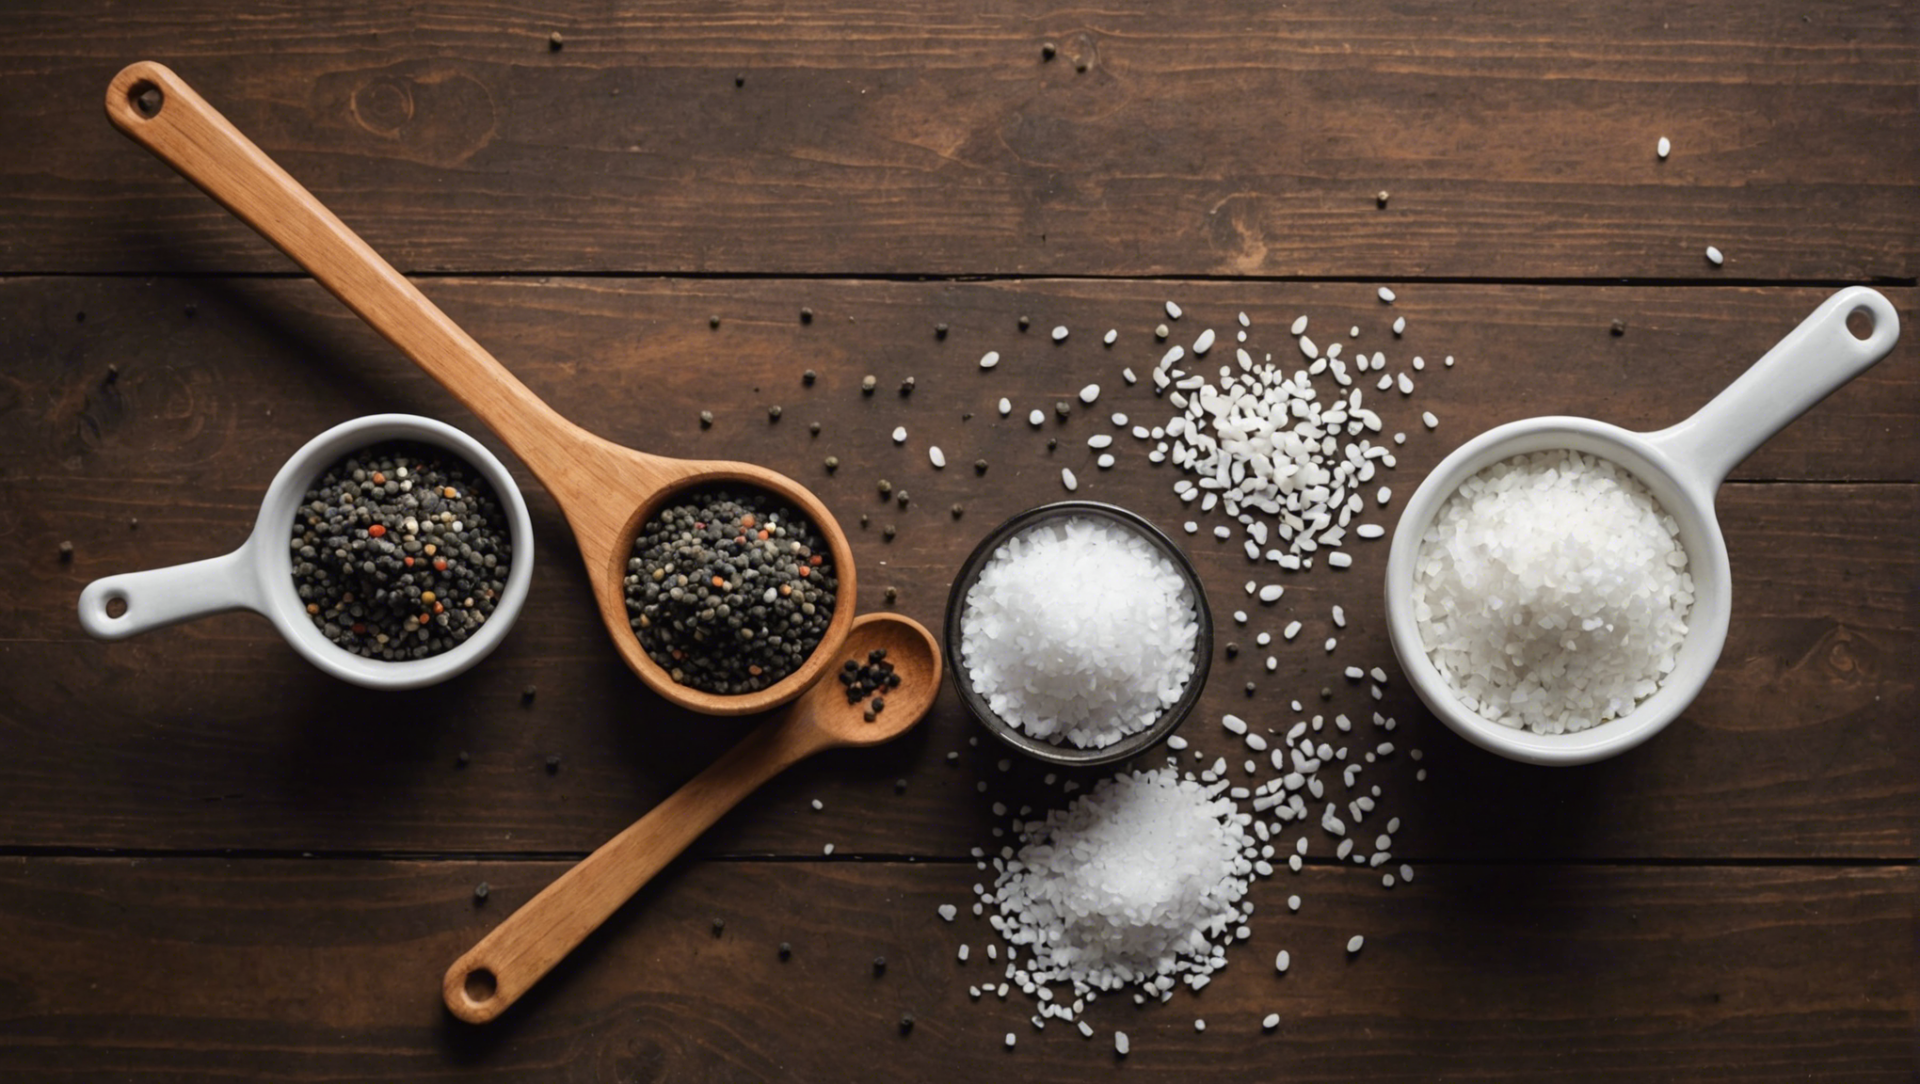 découvrez des techniques efficaces pour séparer le sel du poivre et réussir votre assaisonnement avec nos conseils pratiques.